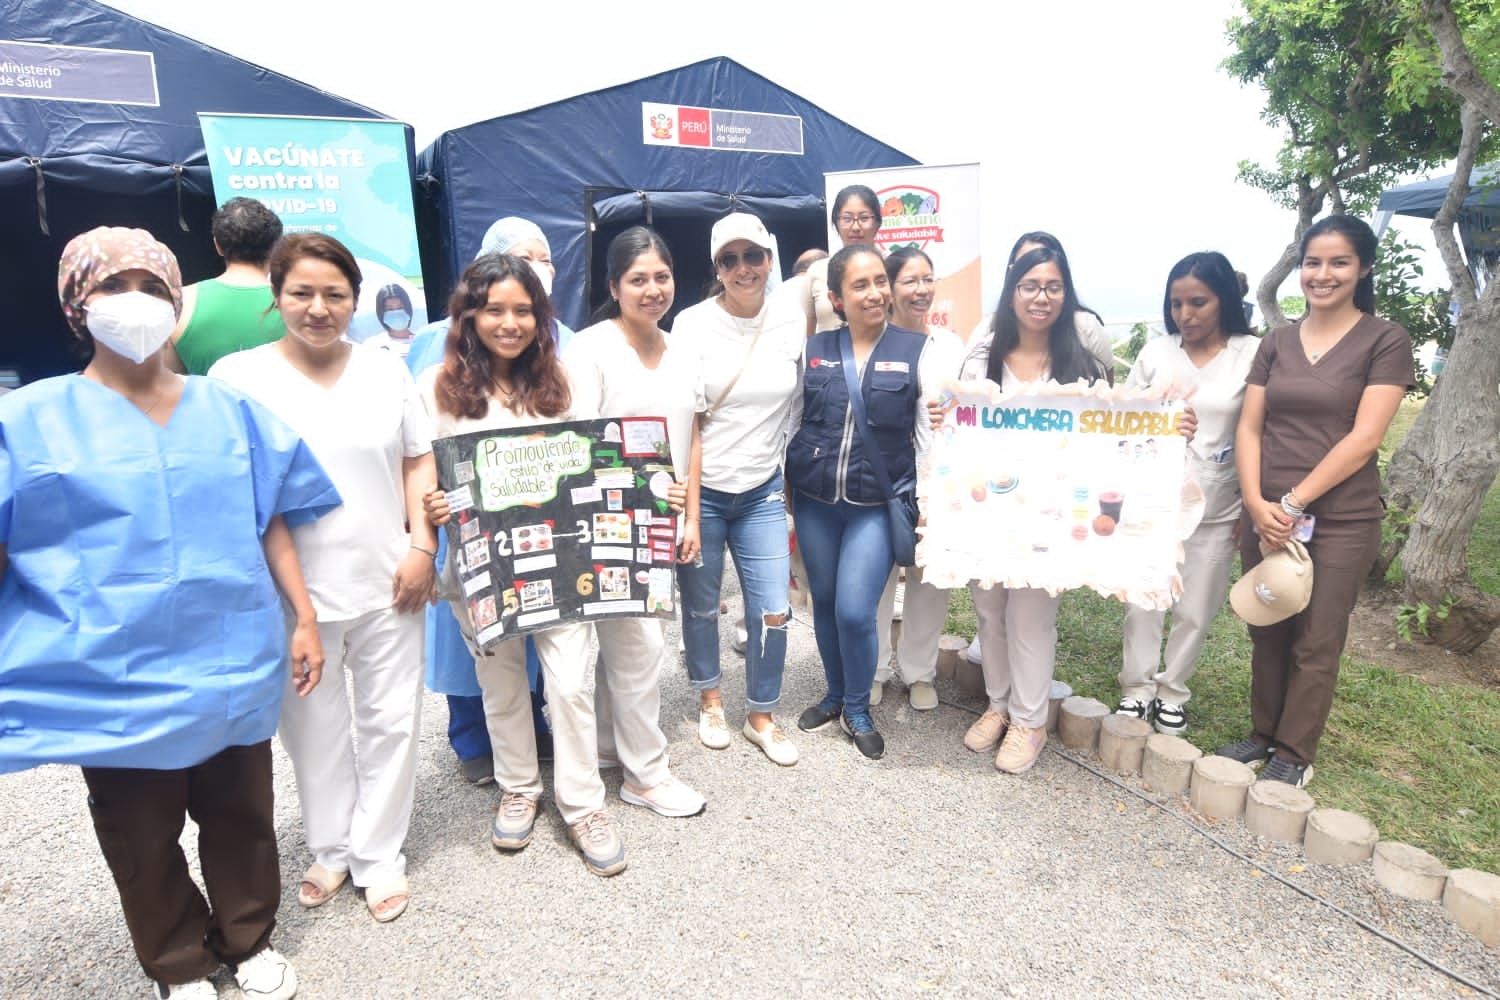 Consulado General de Colombia en Lima conmemora con una feria el Día de la Mujer 